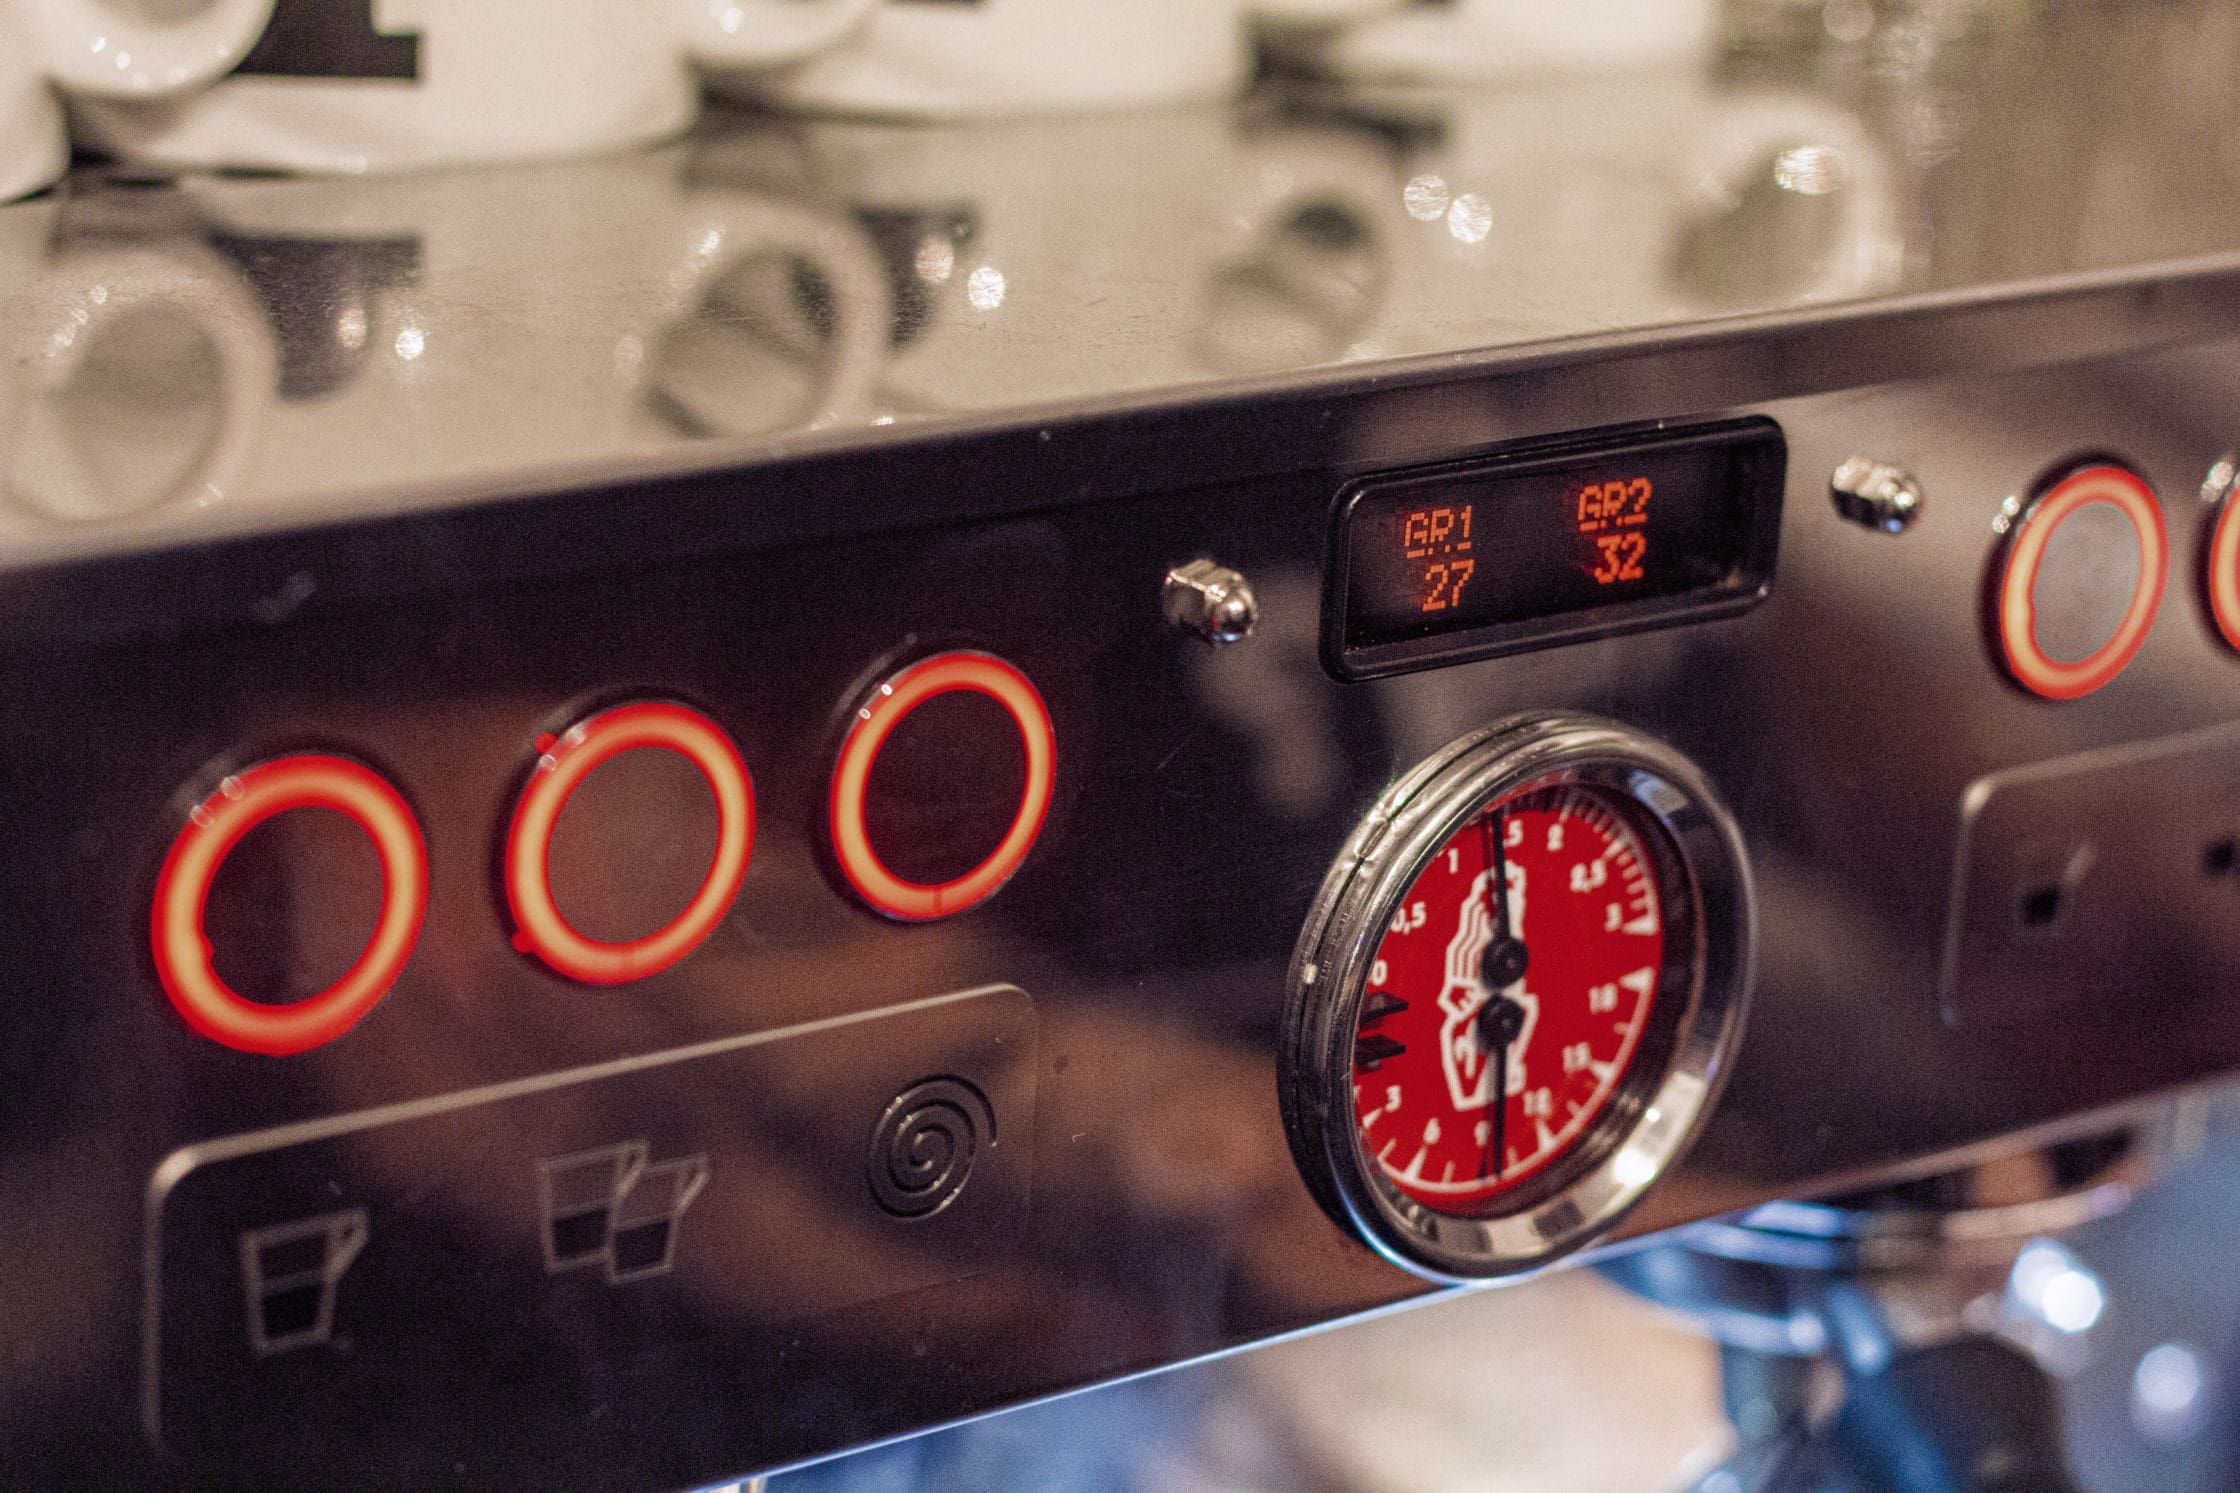 Nahaufnahme einer Espressomaschine mit Manometer und digitaler Anzeige.